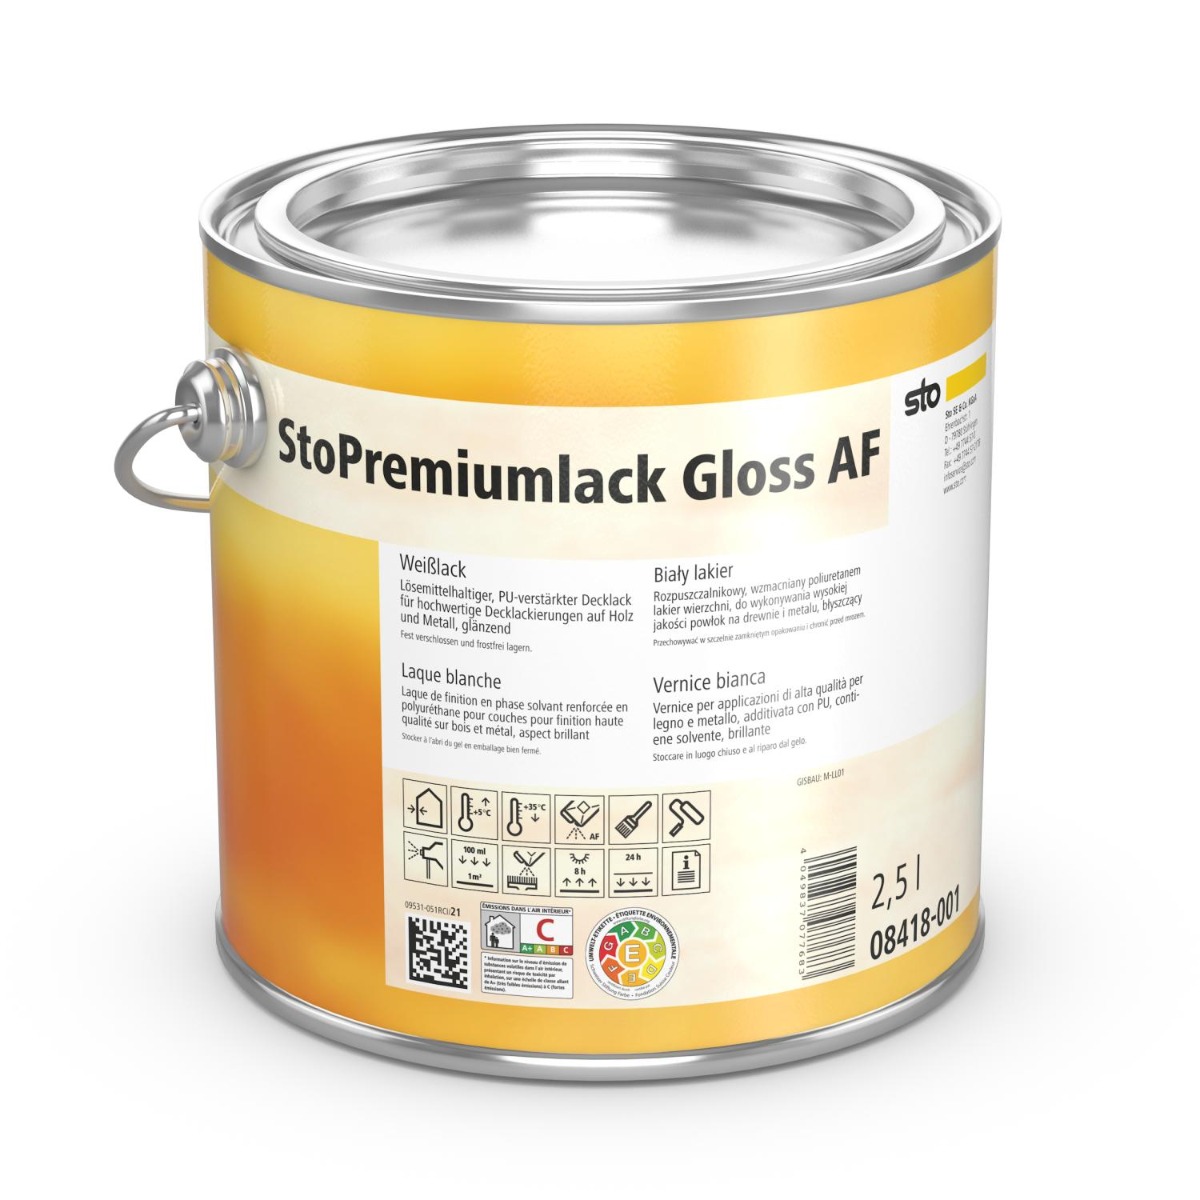 Sto-Premiumlack Gloss AF-Farbtonklasse I 2,5 Liter-2,5 Liter Dose